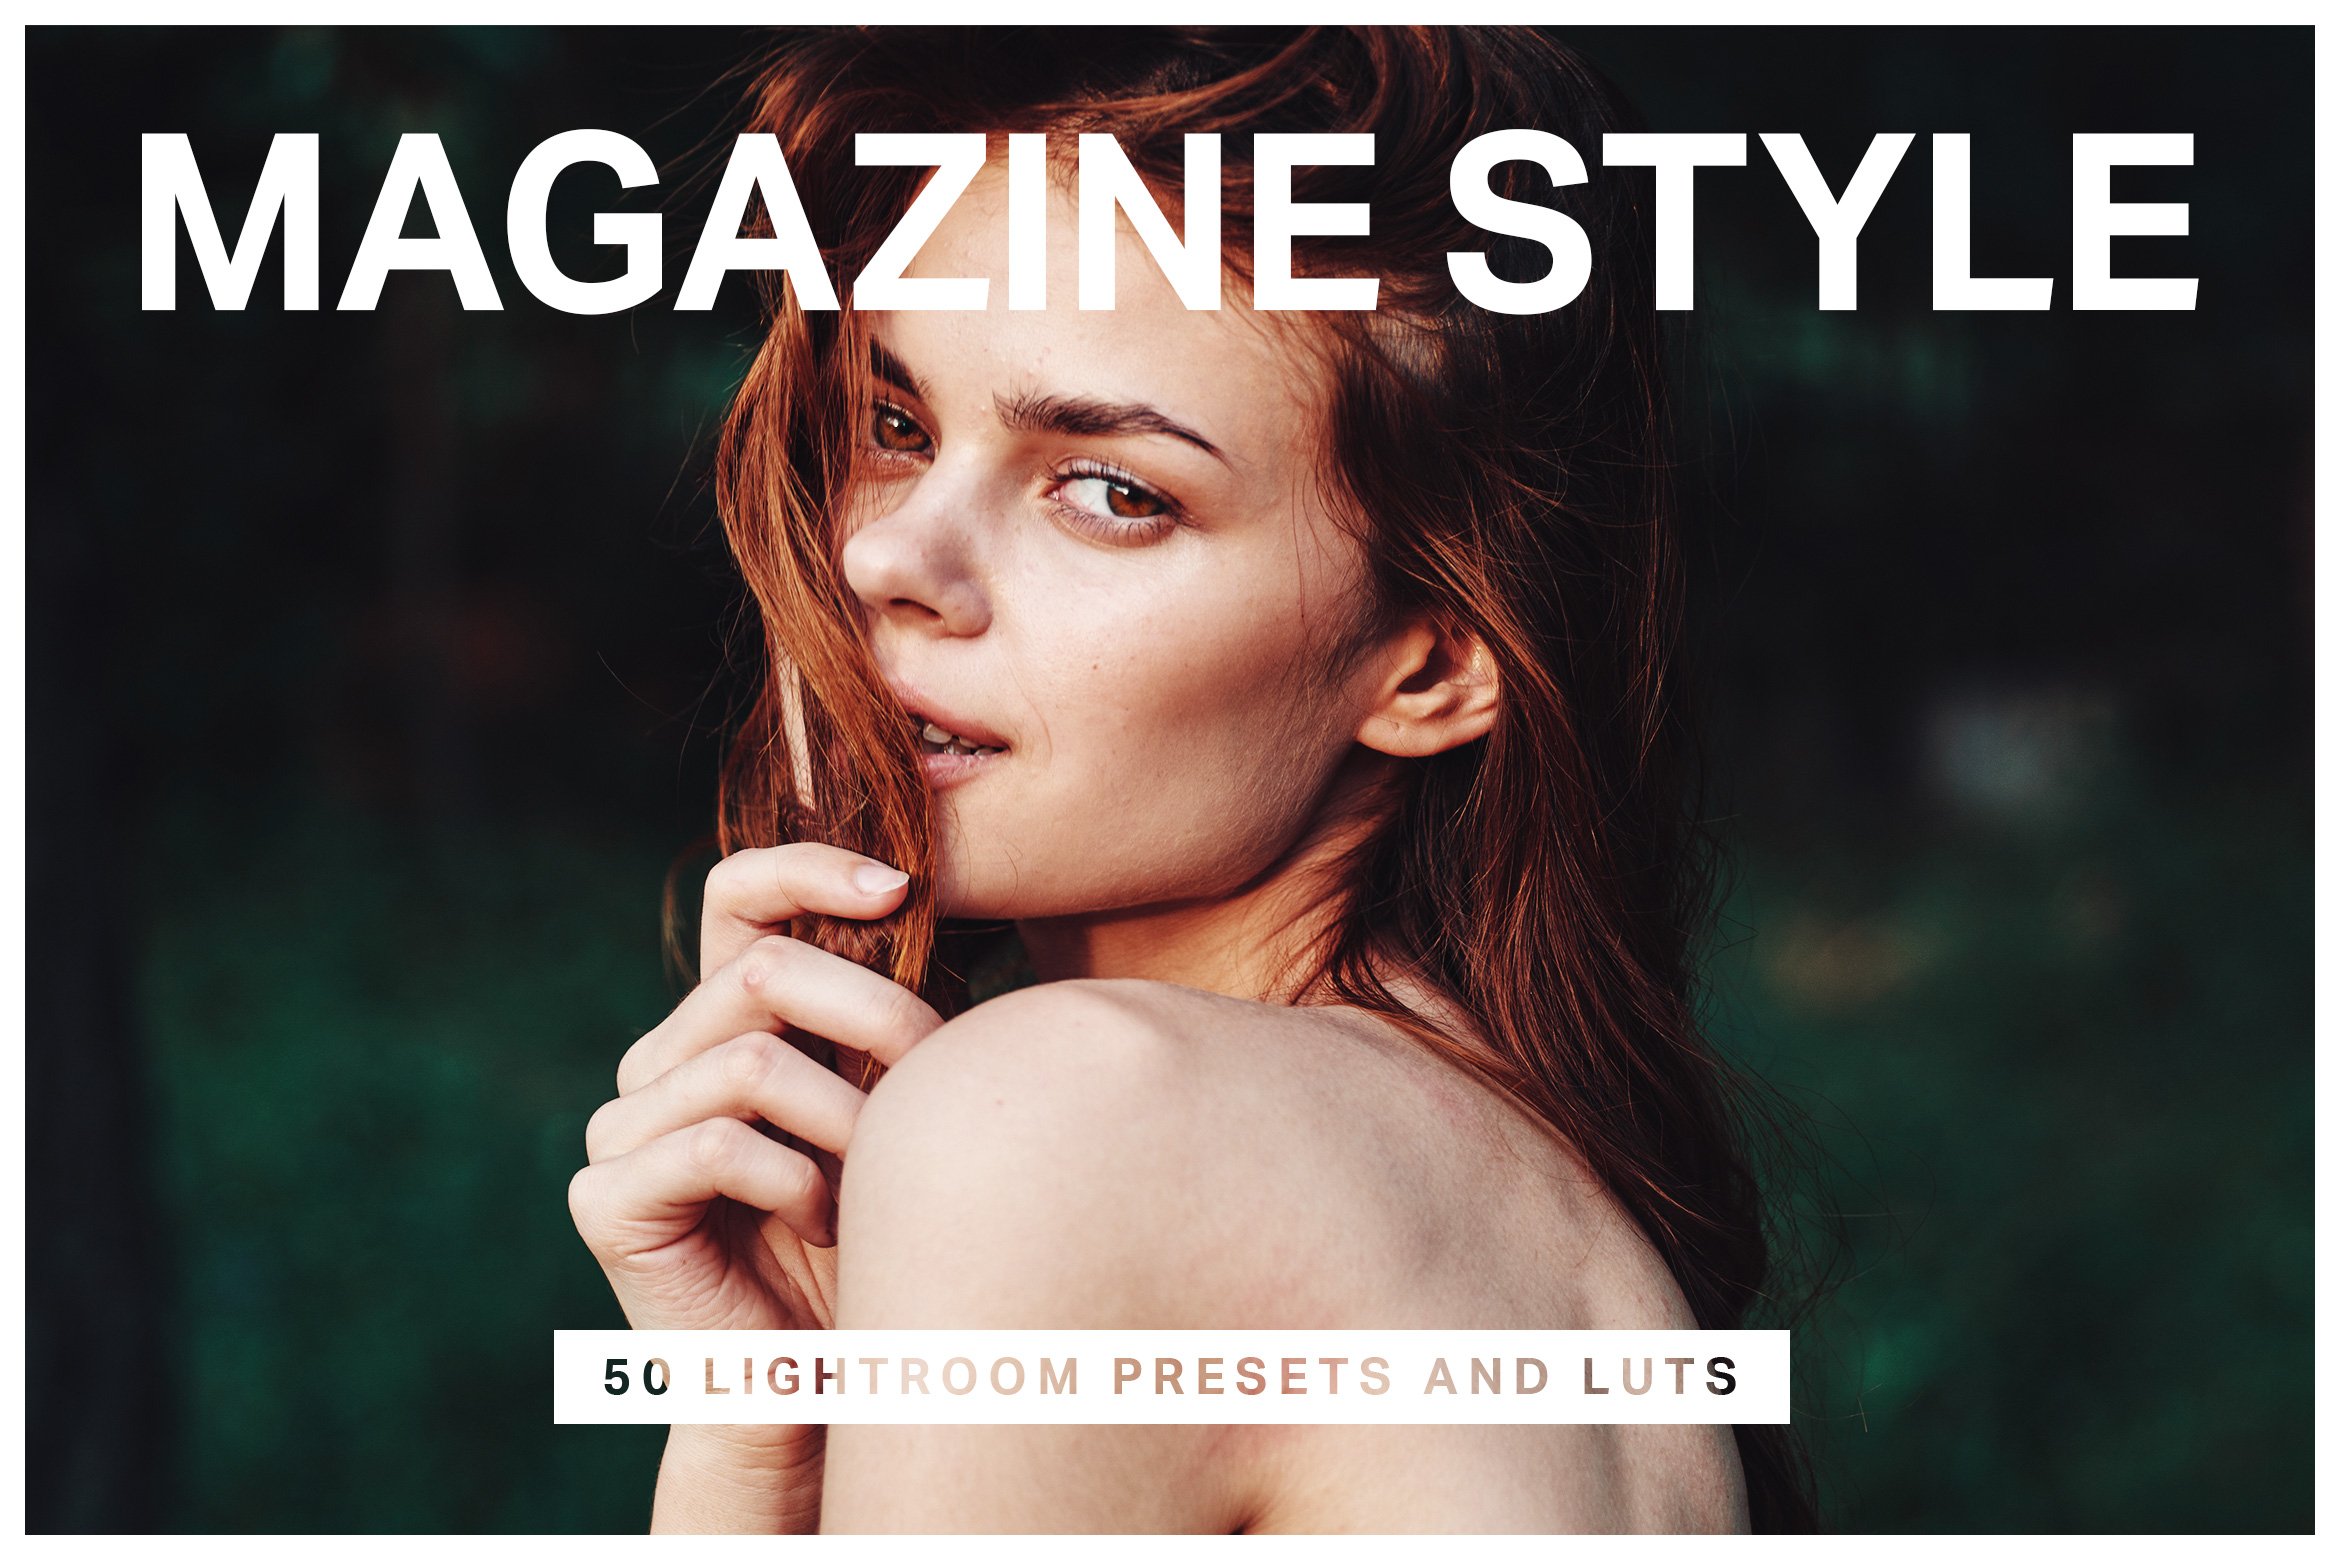 50 Magazine Lightroom Presets & LUTscover image.